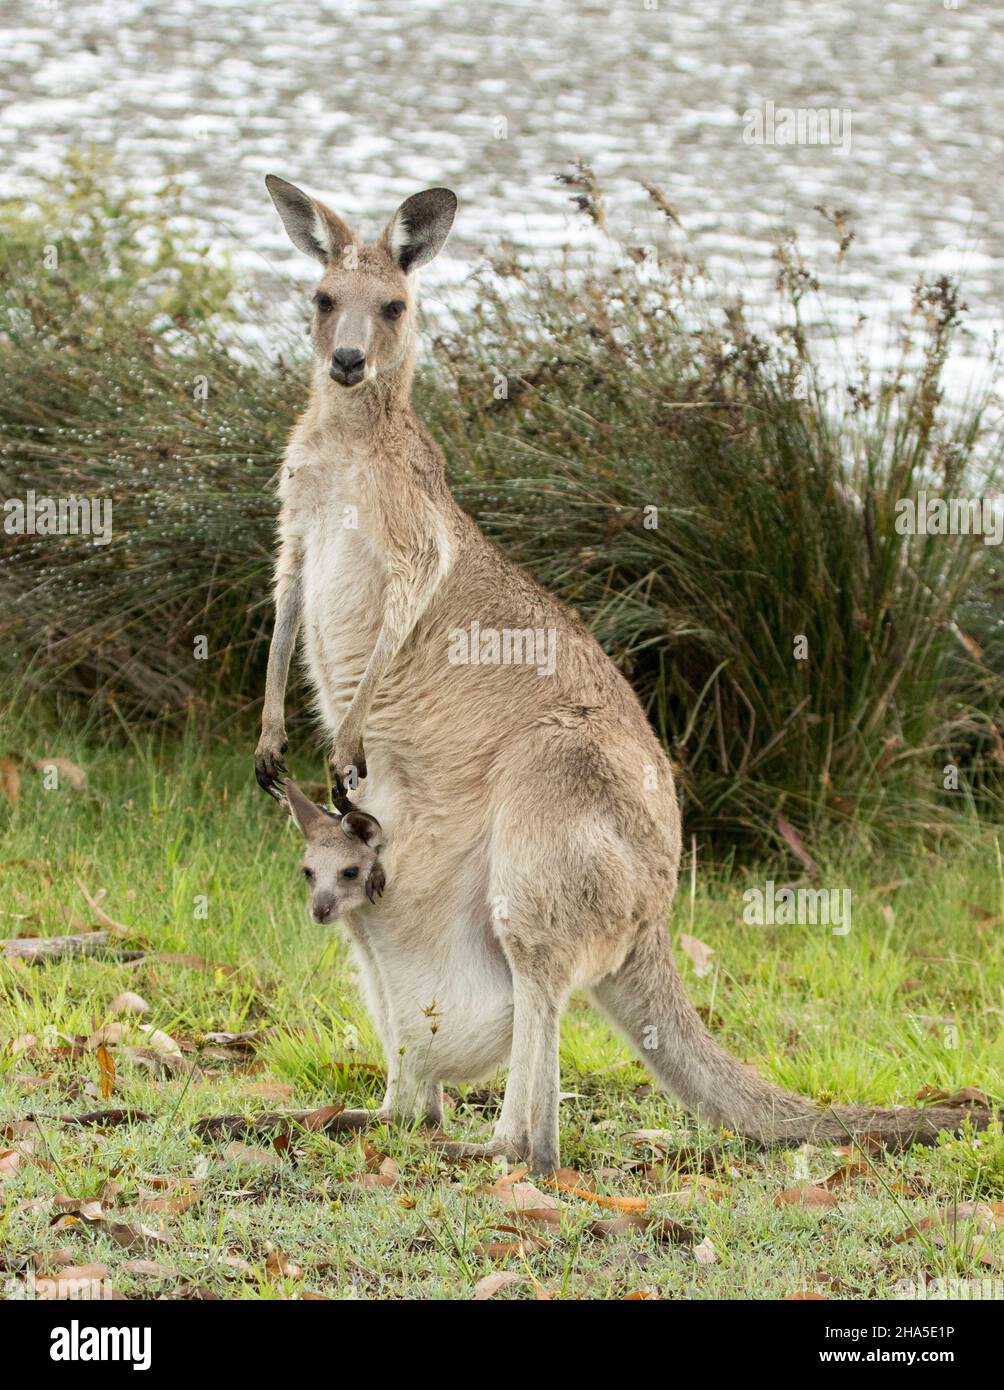 Eastern Grey Känguru mit der winzigen joey, die aus ihrer Tasche guckst, die beide in die Kamera starrten, in der Wildnis am Strand in Australien. Stockfoto